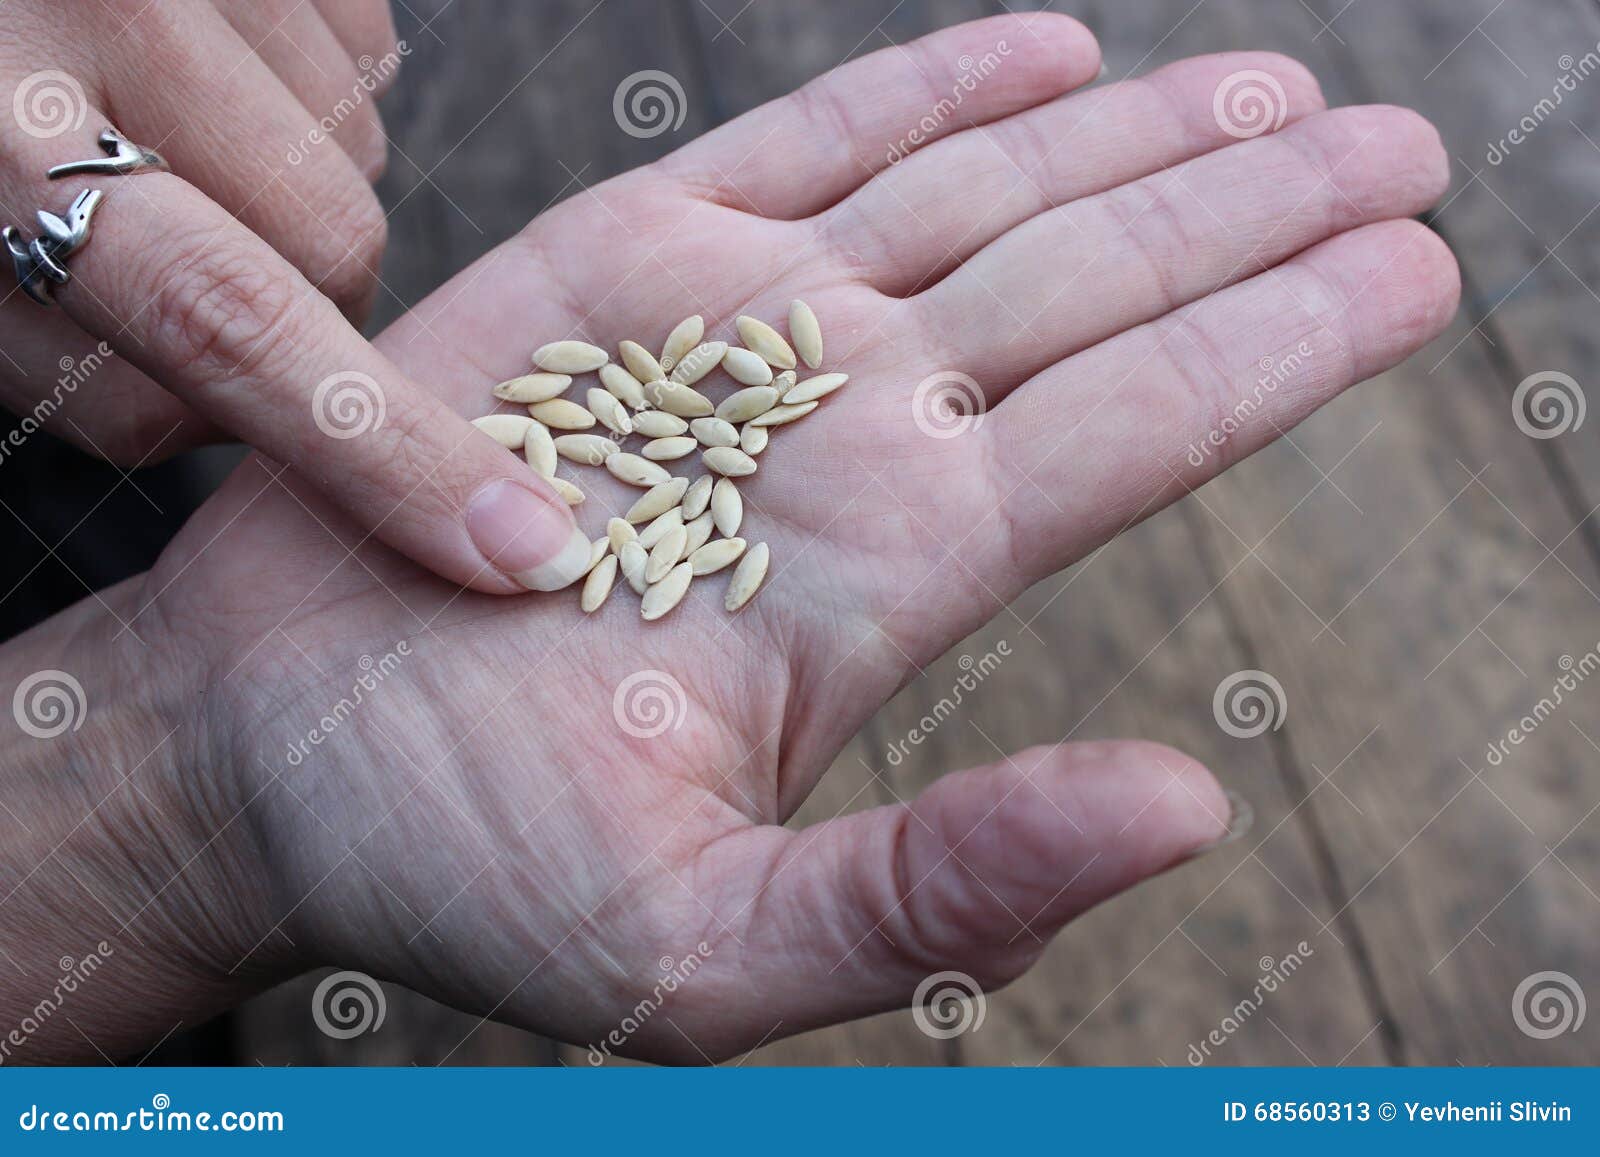 Огород семена огурцов. Семена. Семена огурцов на руке. Качественные семена. Некачественные семена.